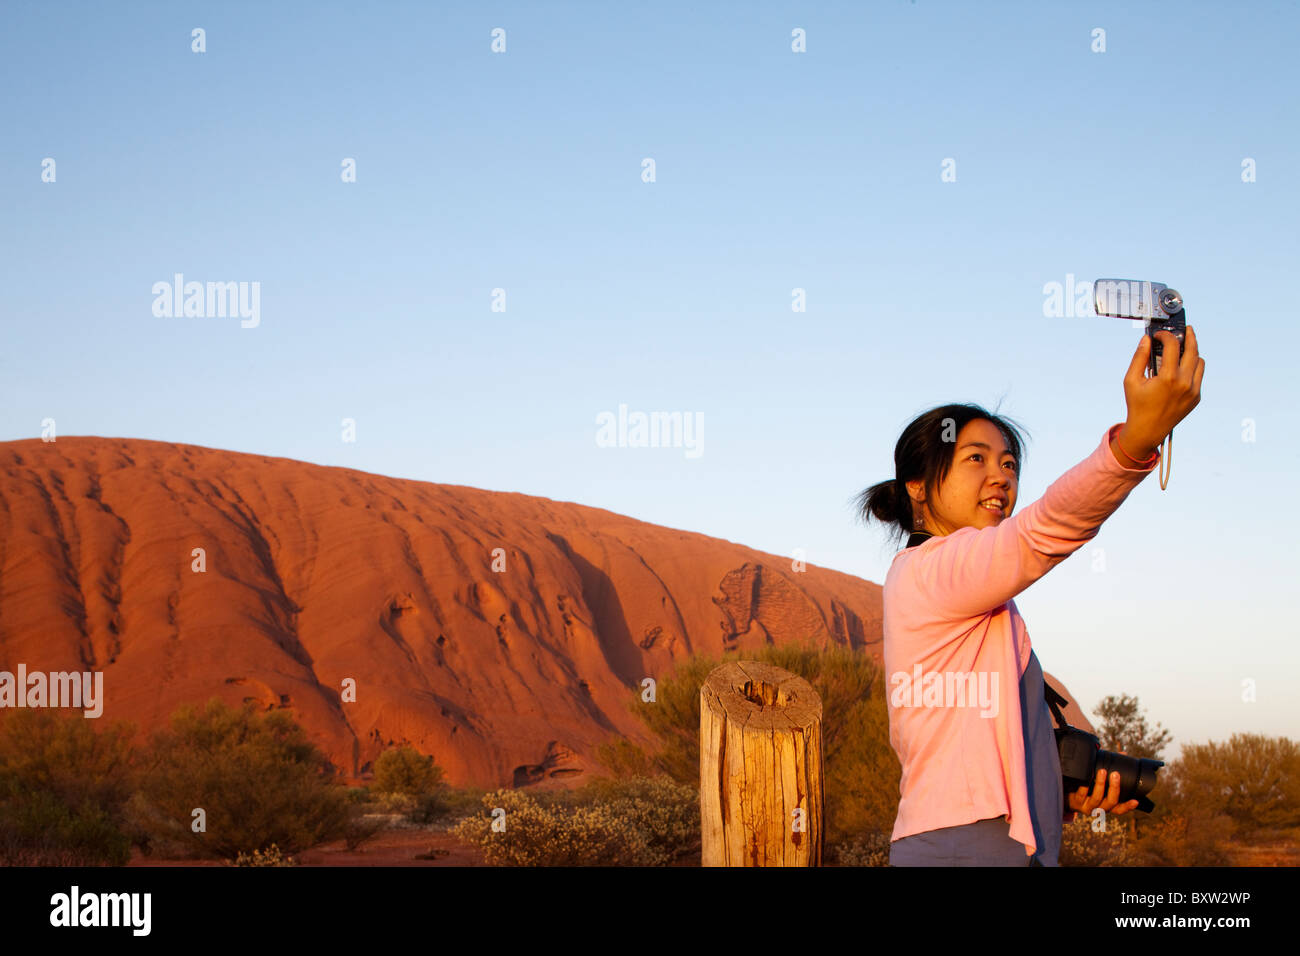 Australien, Northern Territory Uluru - Kata Tjuta Nationalpark asiatische Touristen nimmt Schnappschüsse von sich selbst vor Ayers Rock Stockfoto